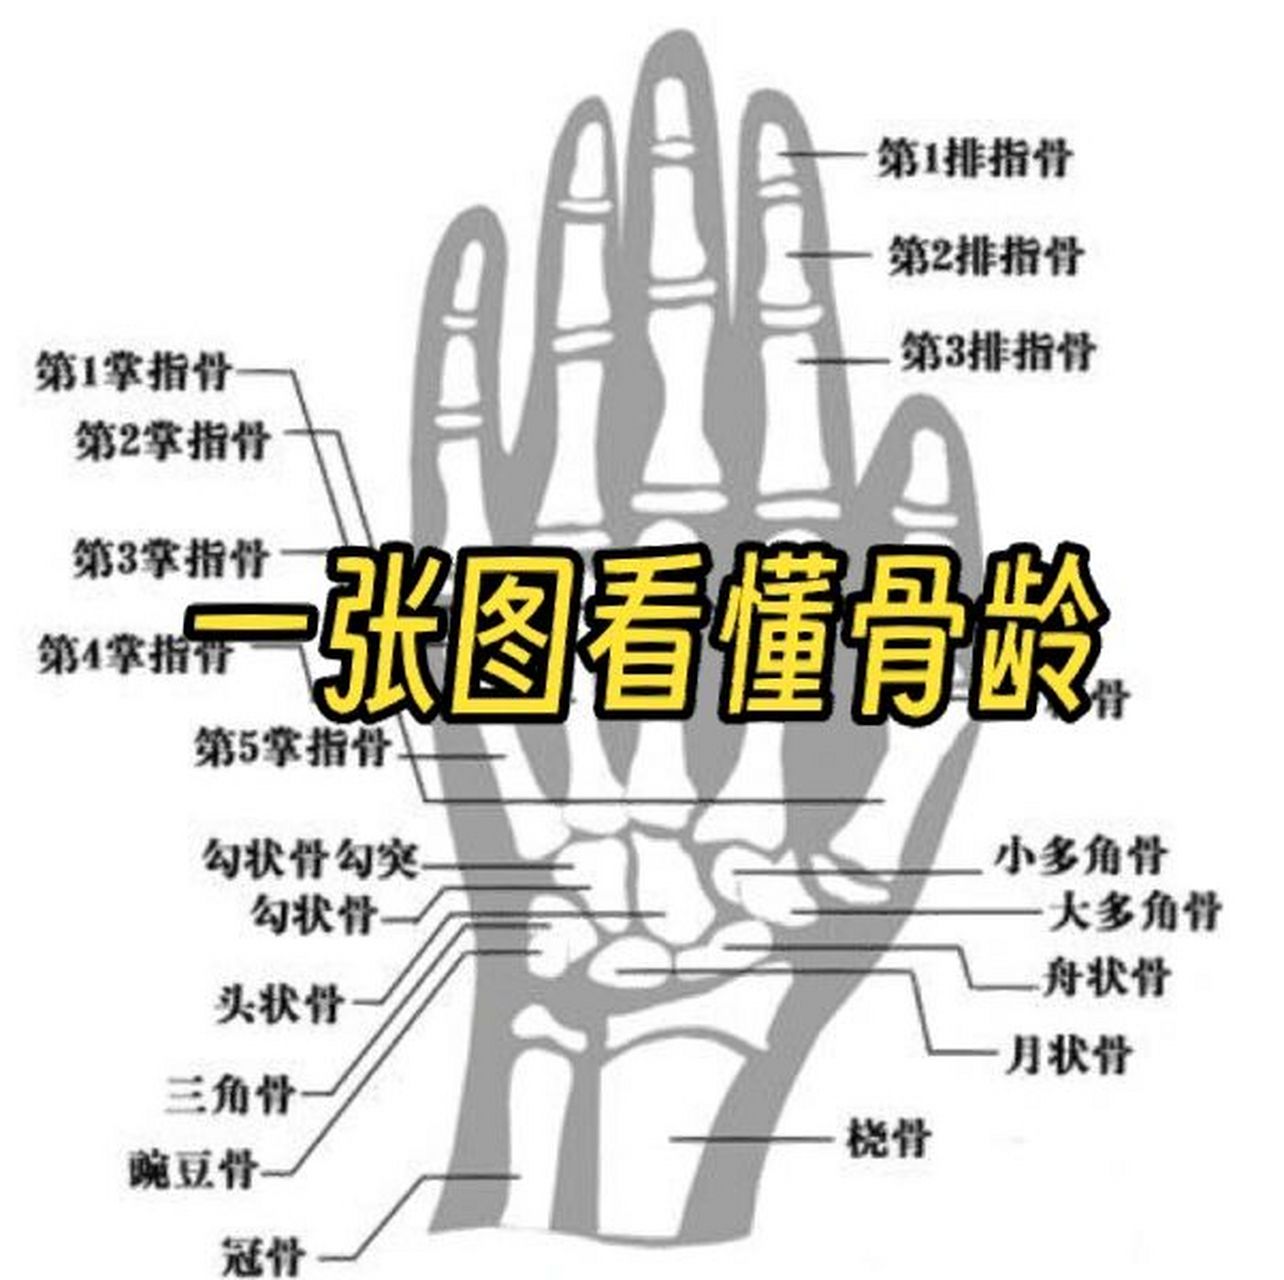 一张图教会你看骨龄片 方法:根据手掌的指骨,腕骨以及桡骨,尺骨下端的